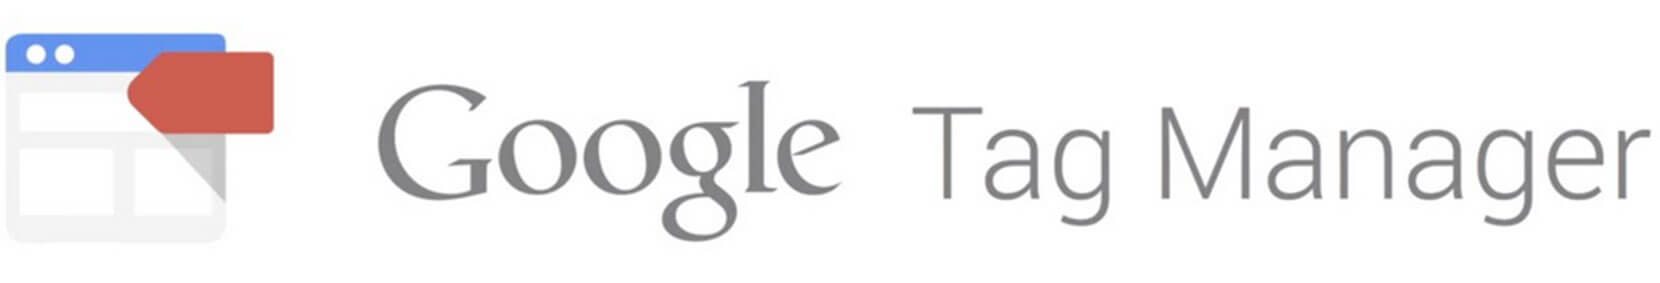 Google Tag Manager Schriftzug